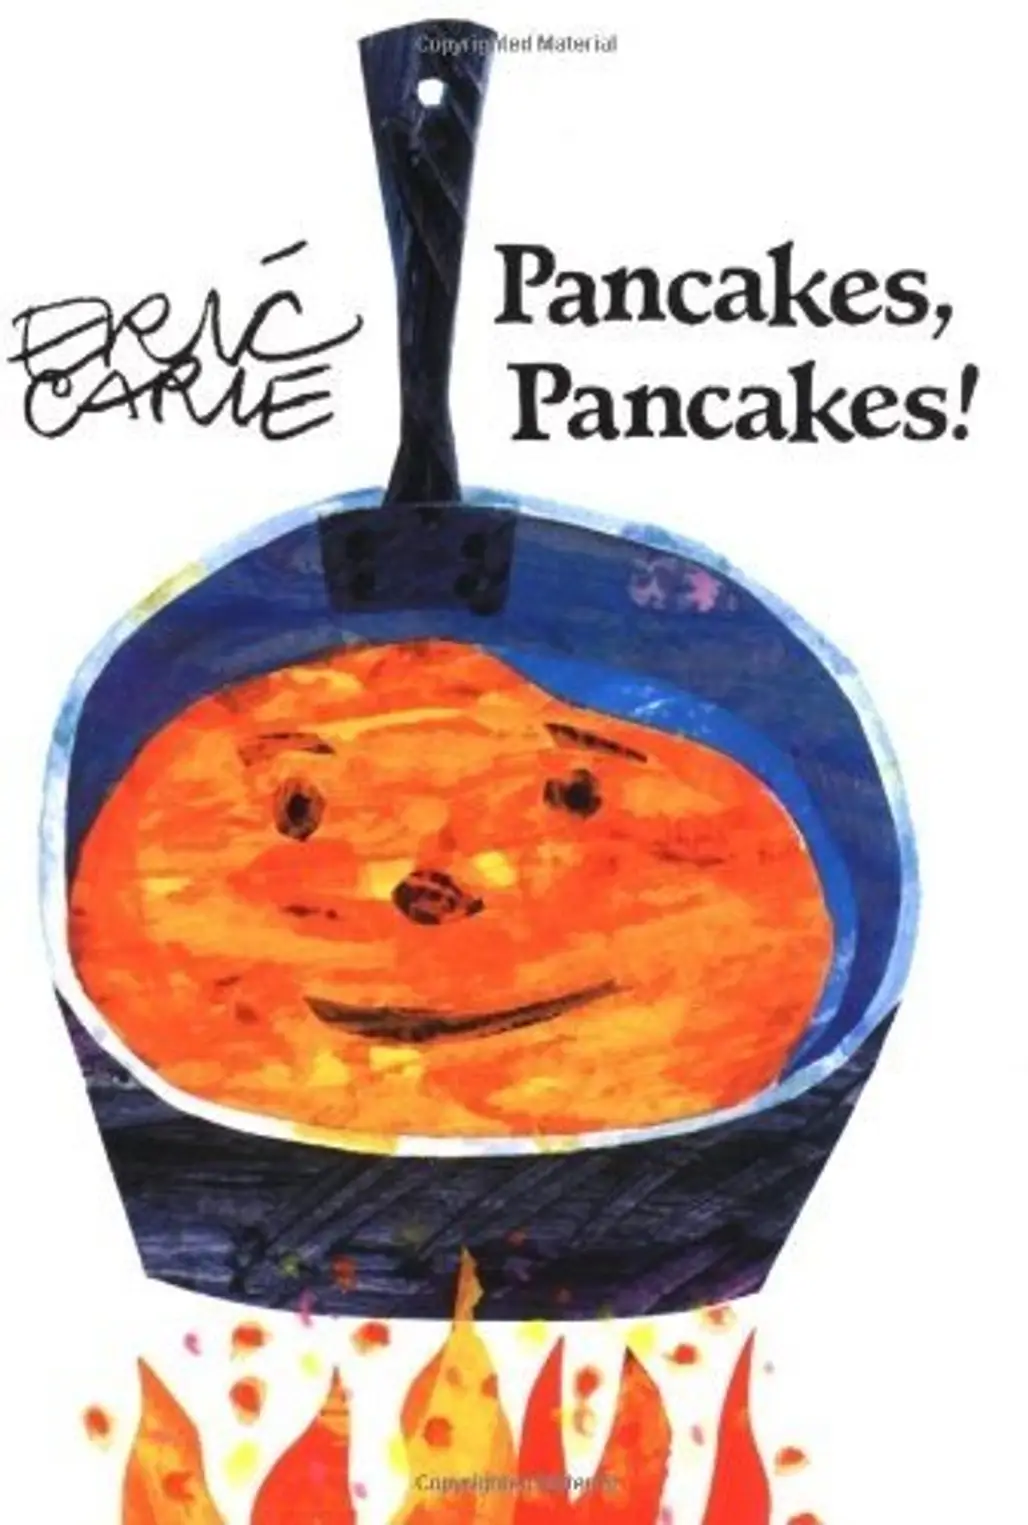 Pancakes! Pancakes!